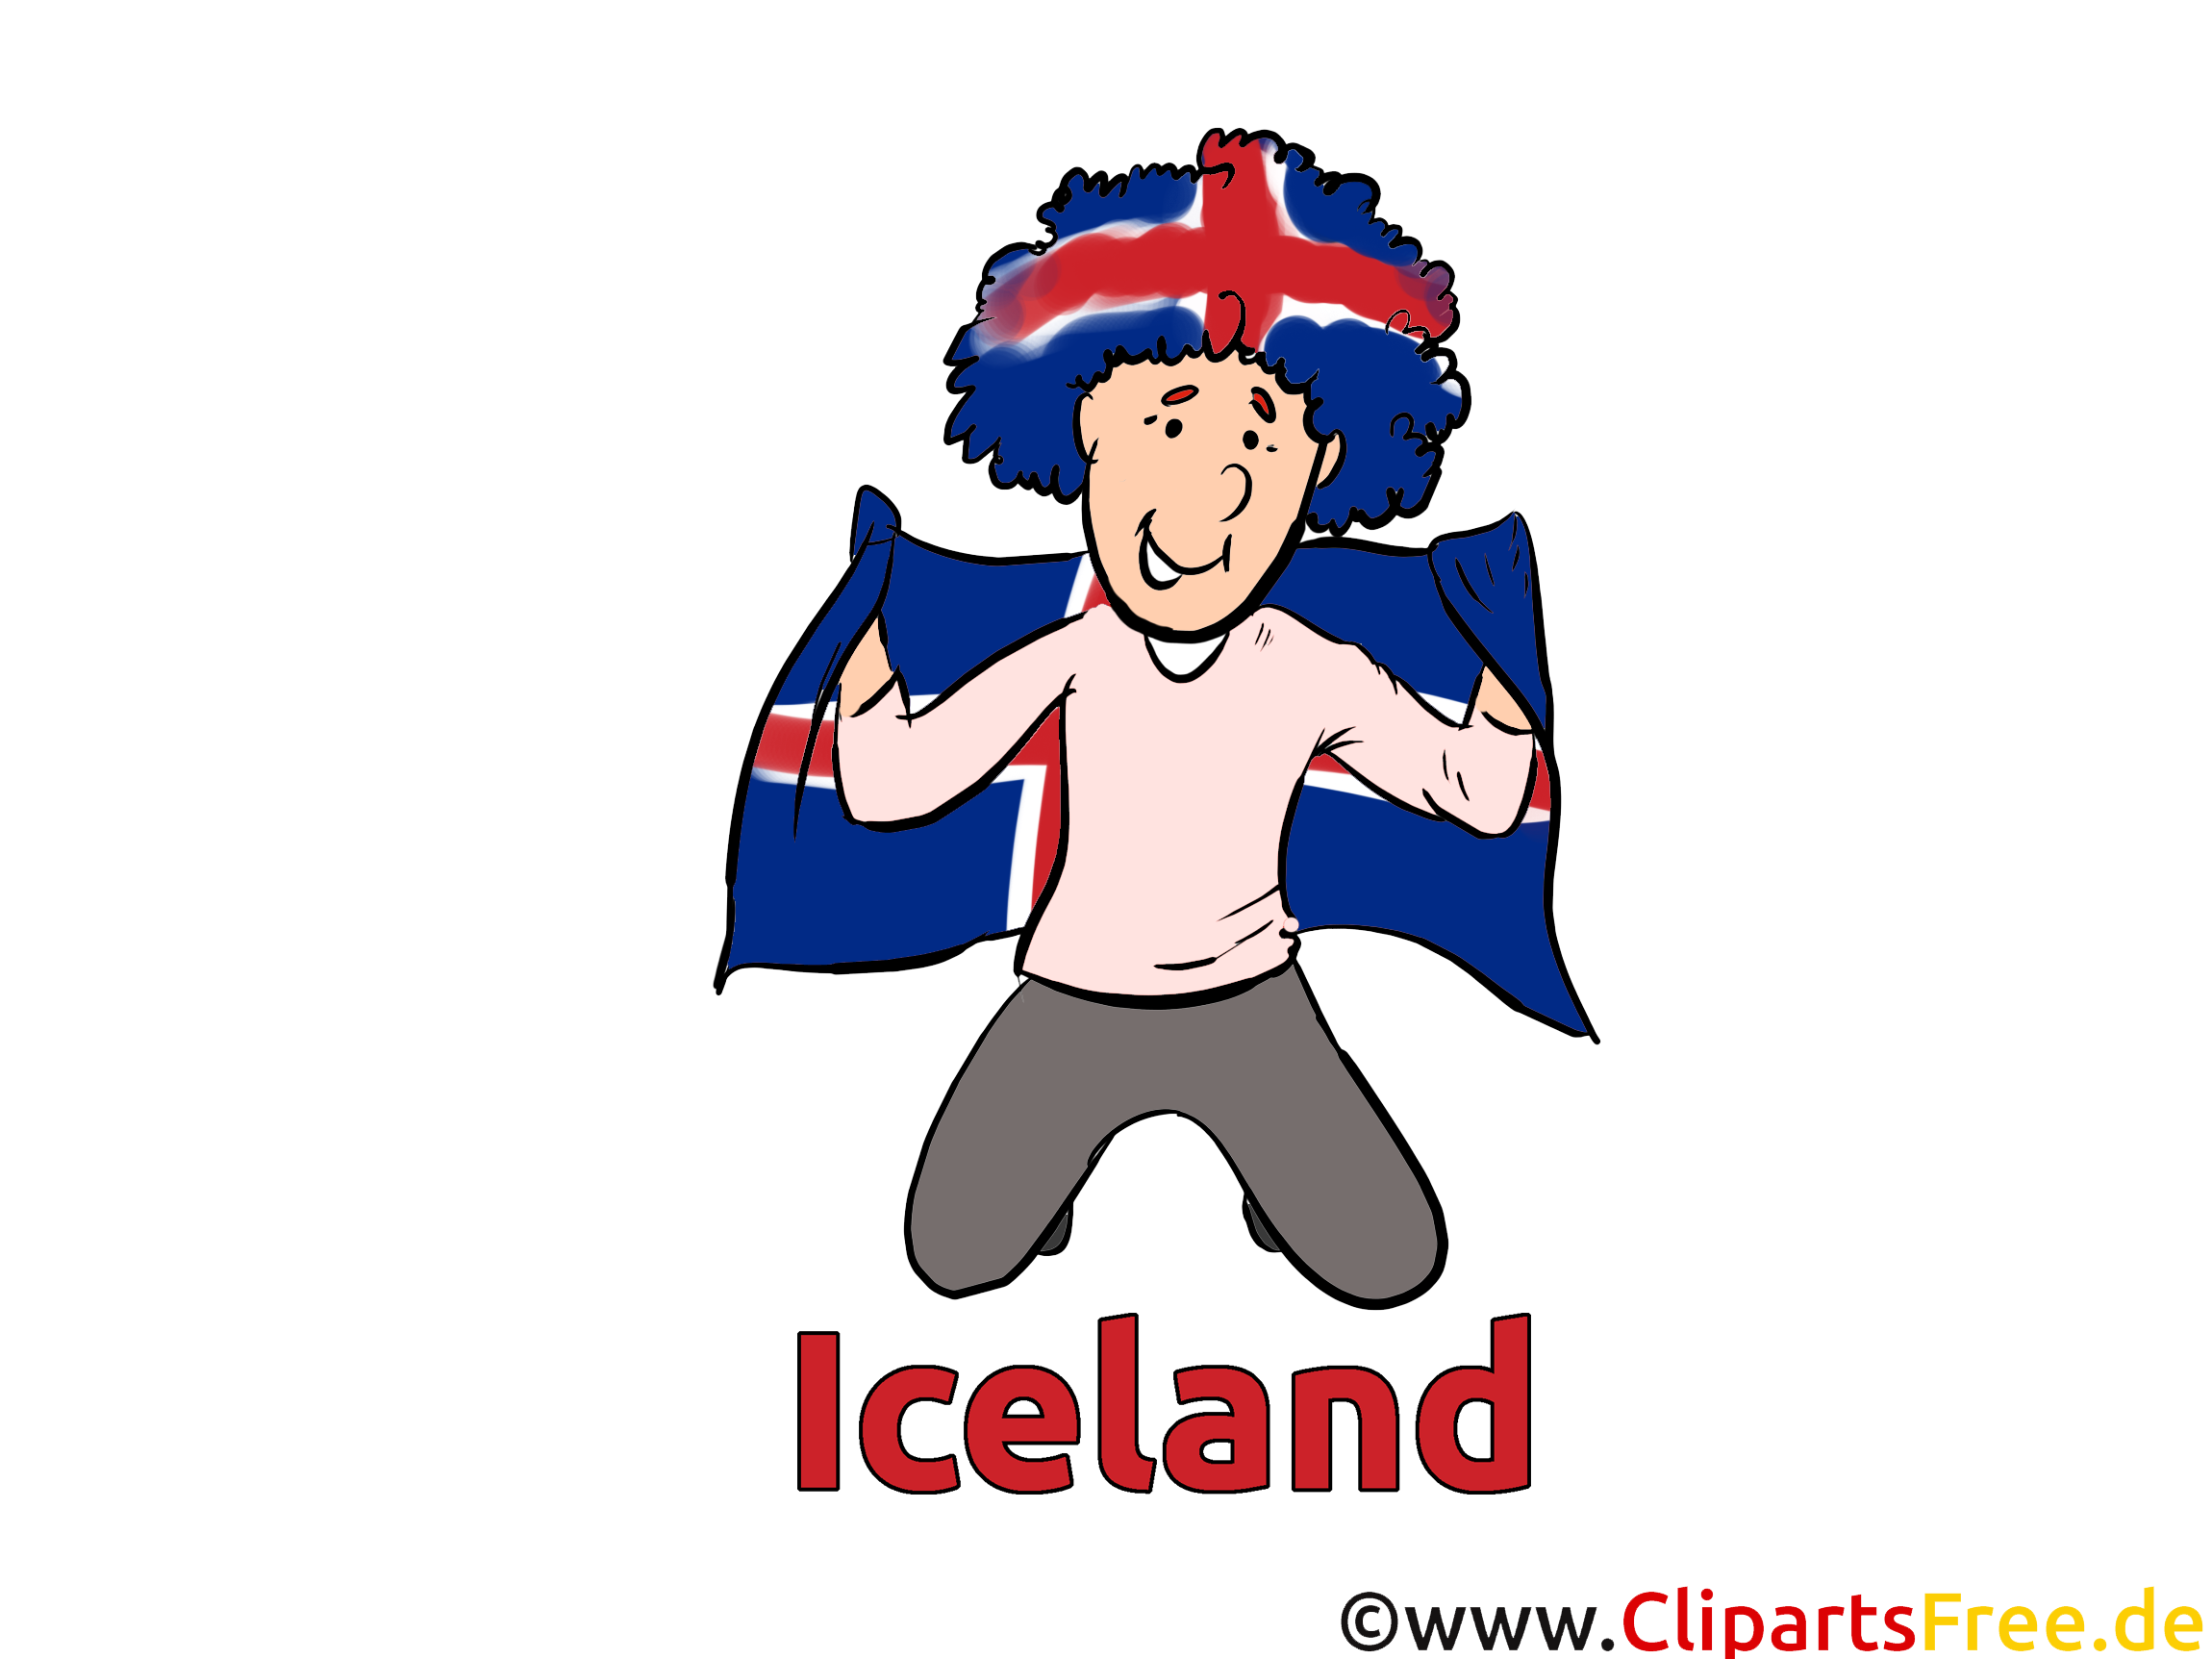 Télécharger Soccer Images gratuitement Islande